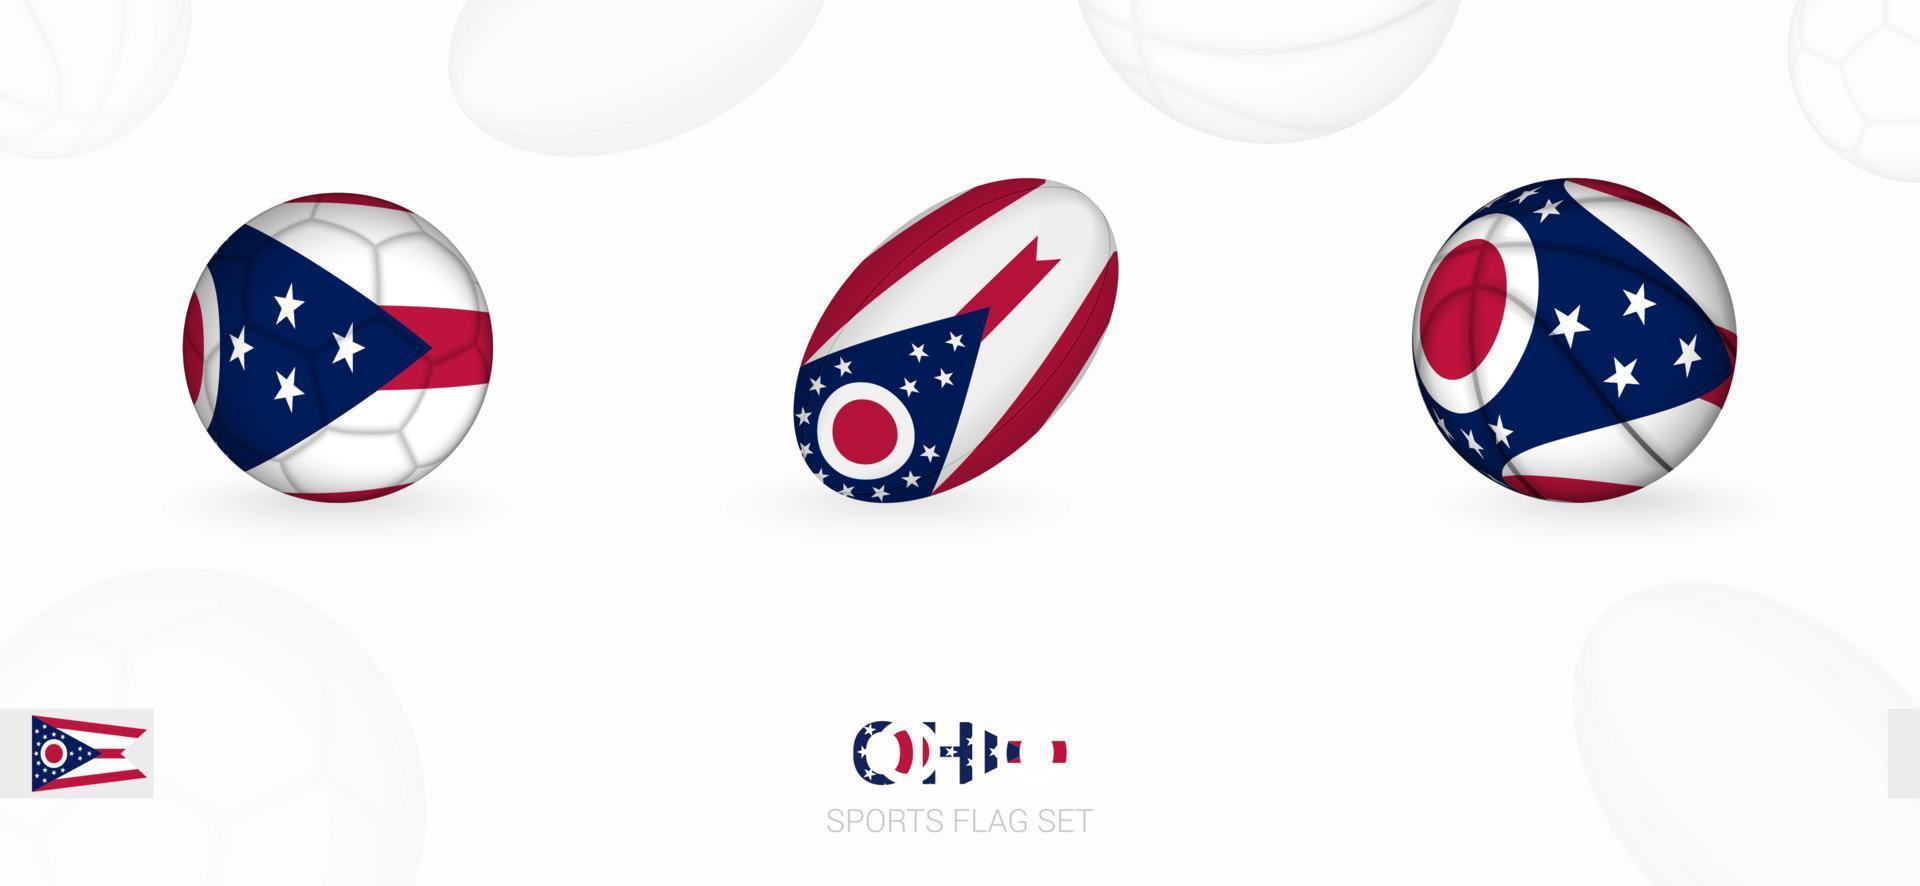 Deportes íconos para fútbol, rugby y baloncesto con el bandera de Ohio. vector